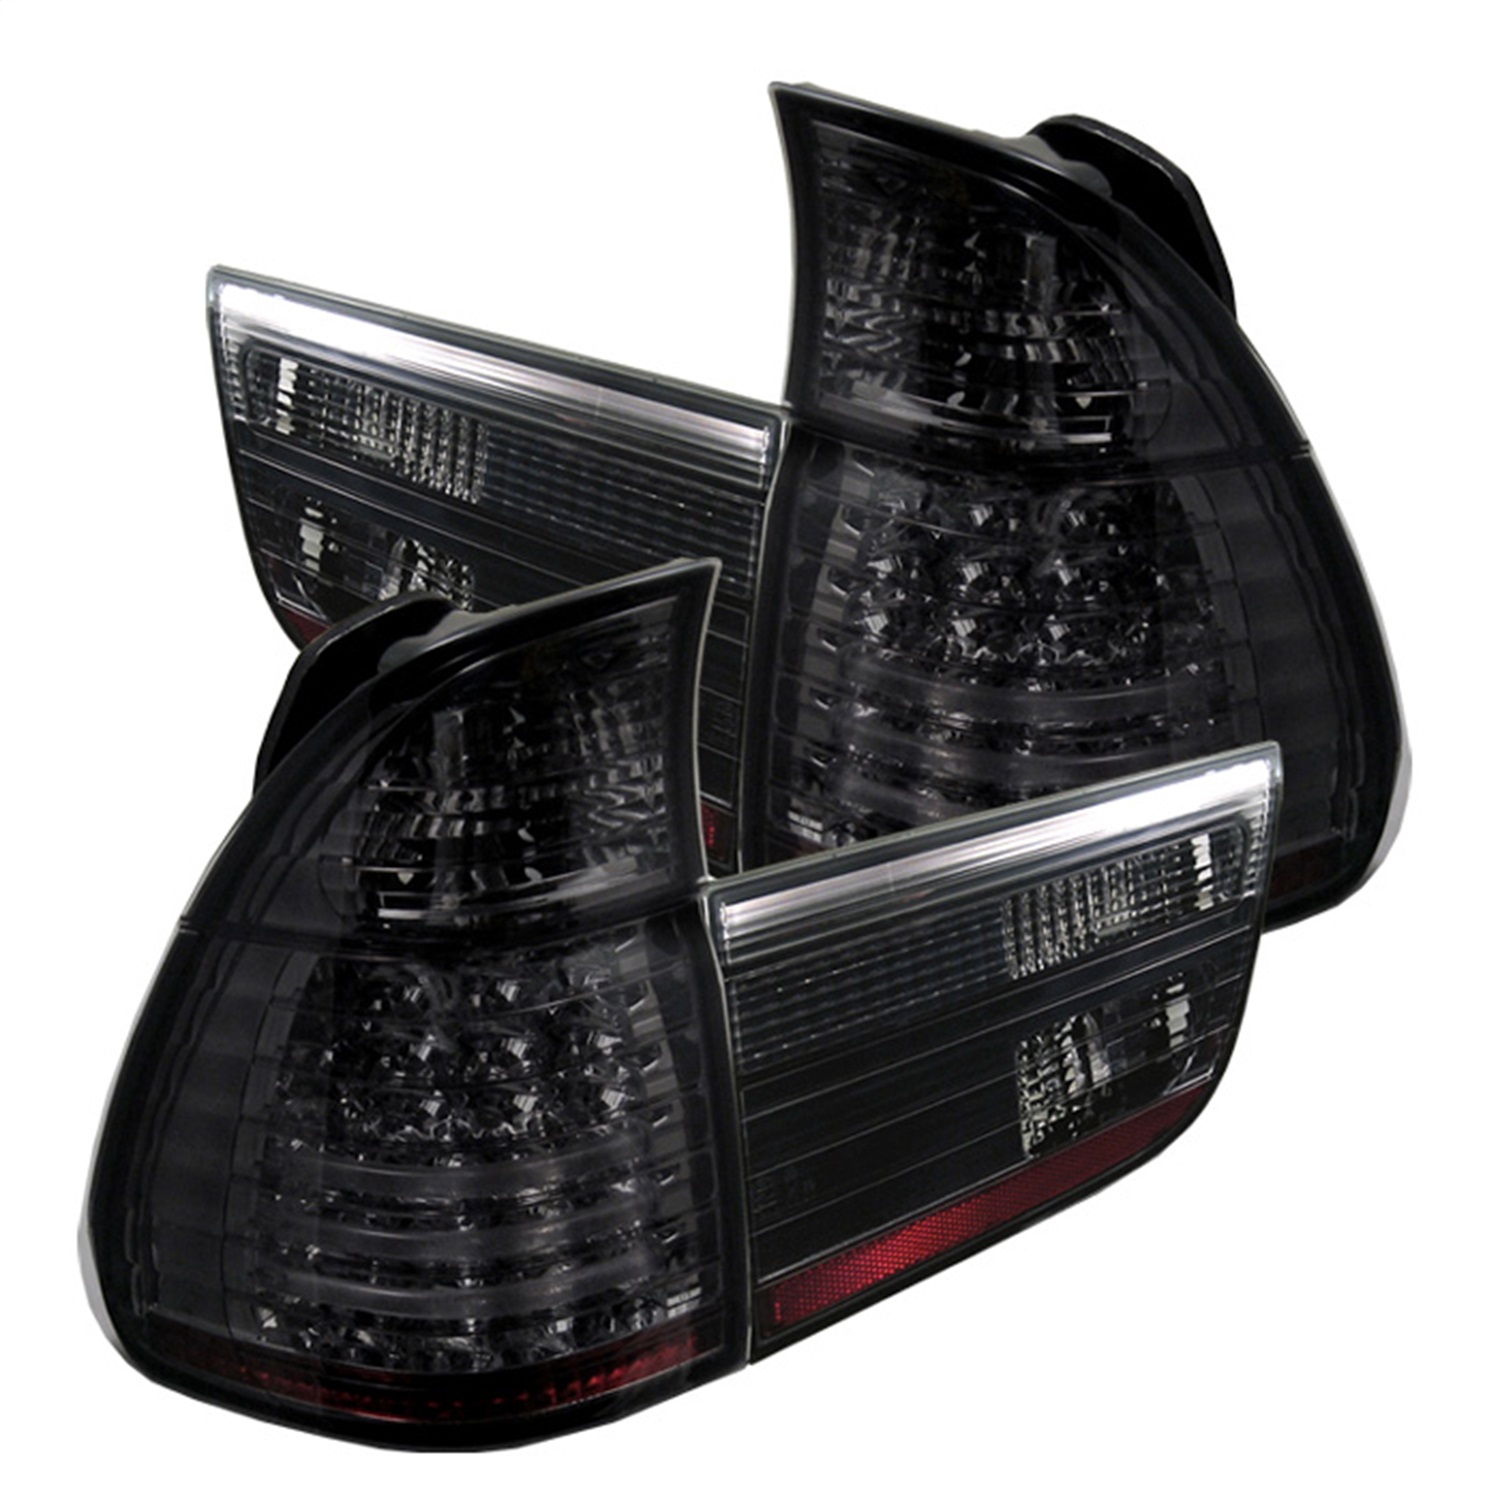 Spyder Auto 5000828 LED Tail Lights Fits 00-06 X5